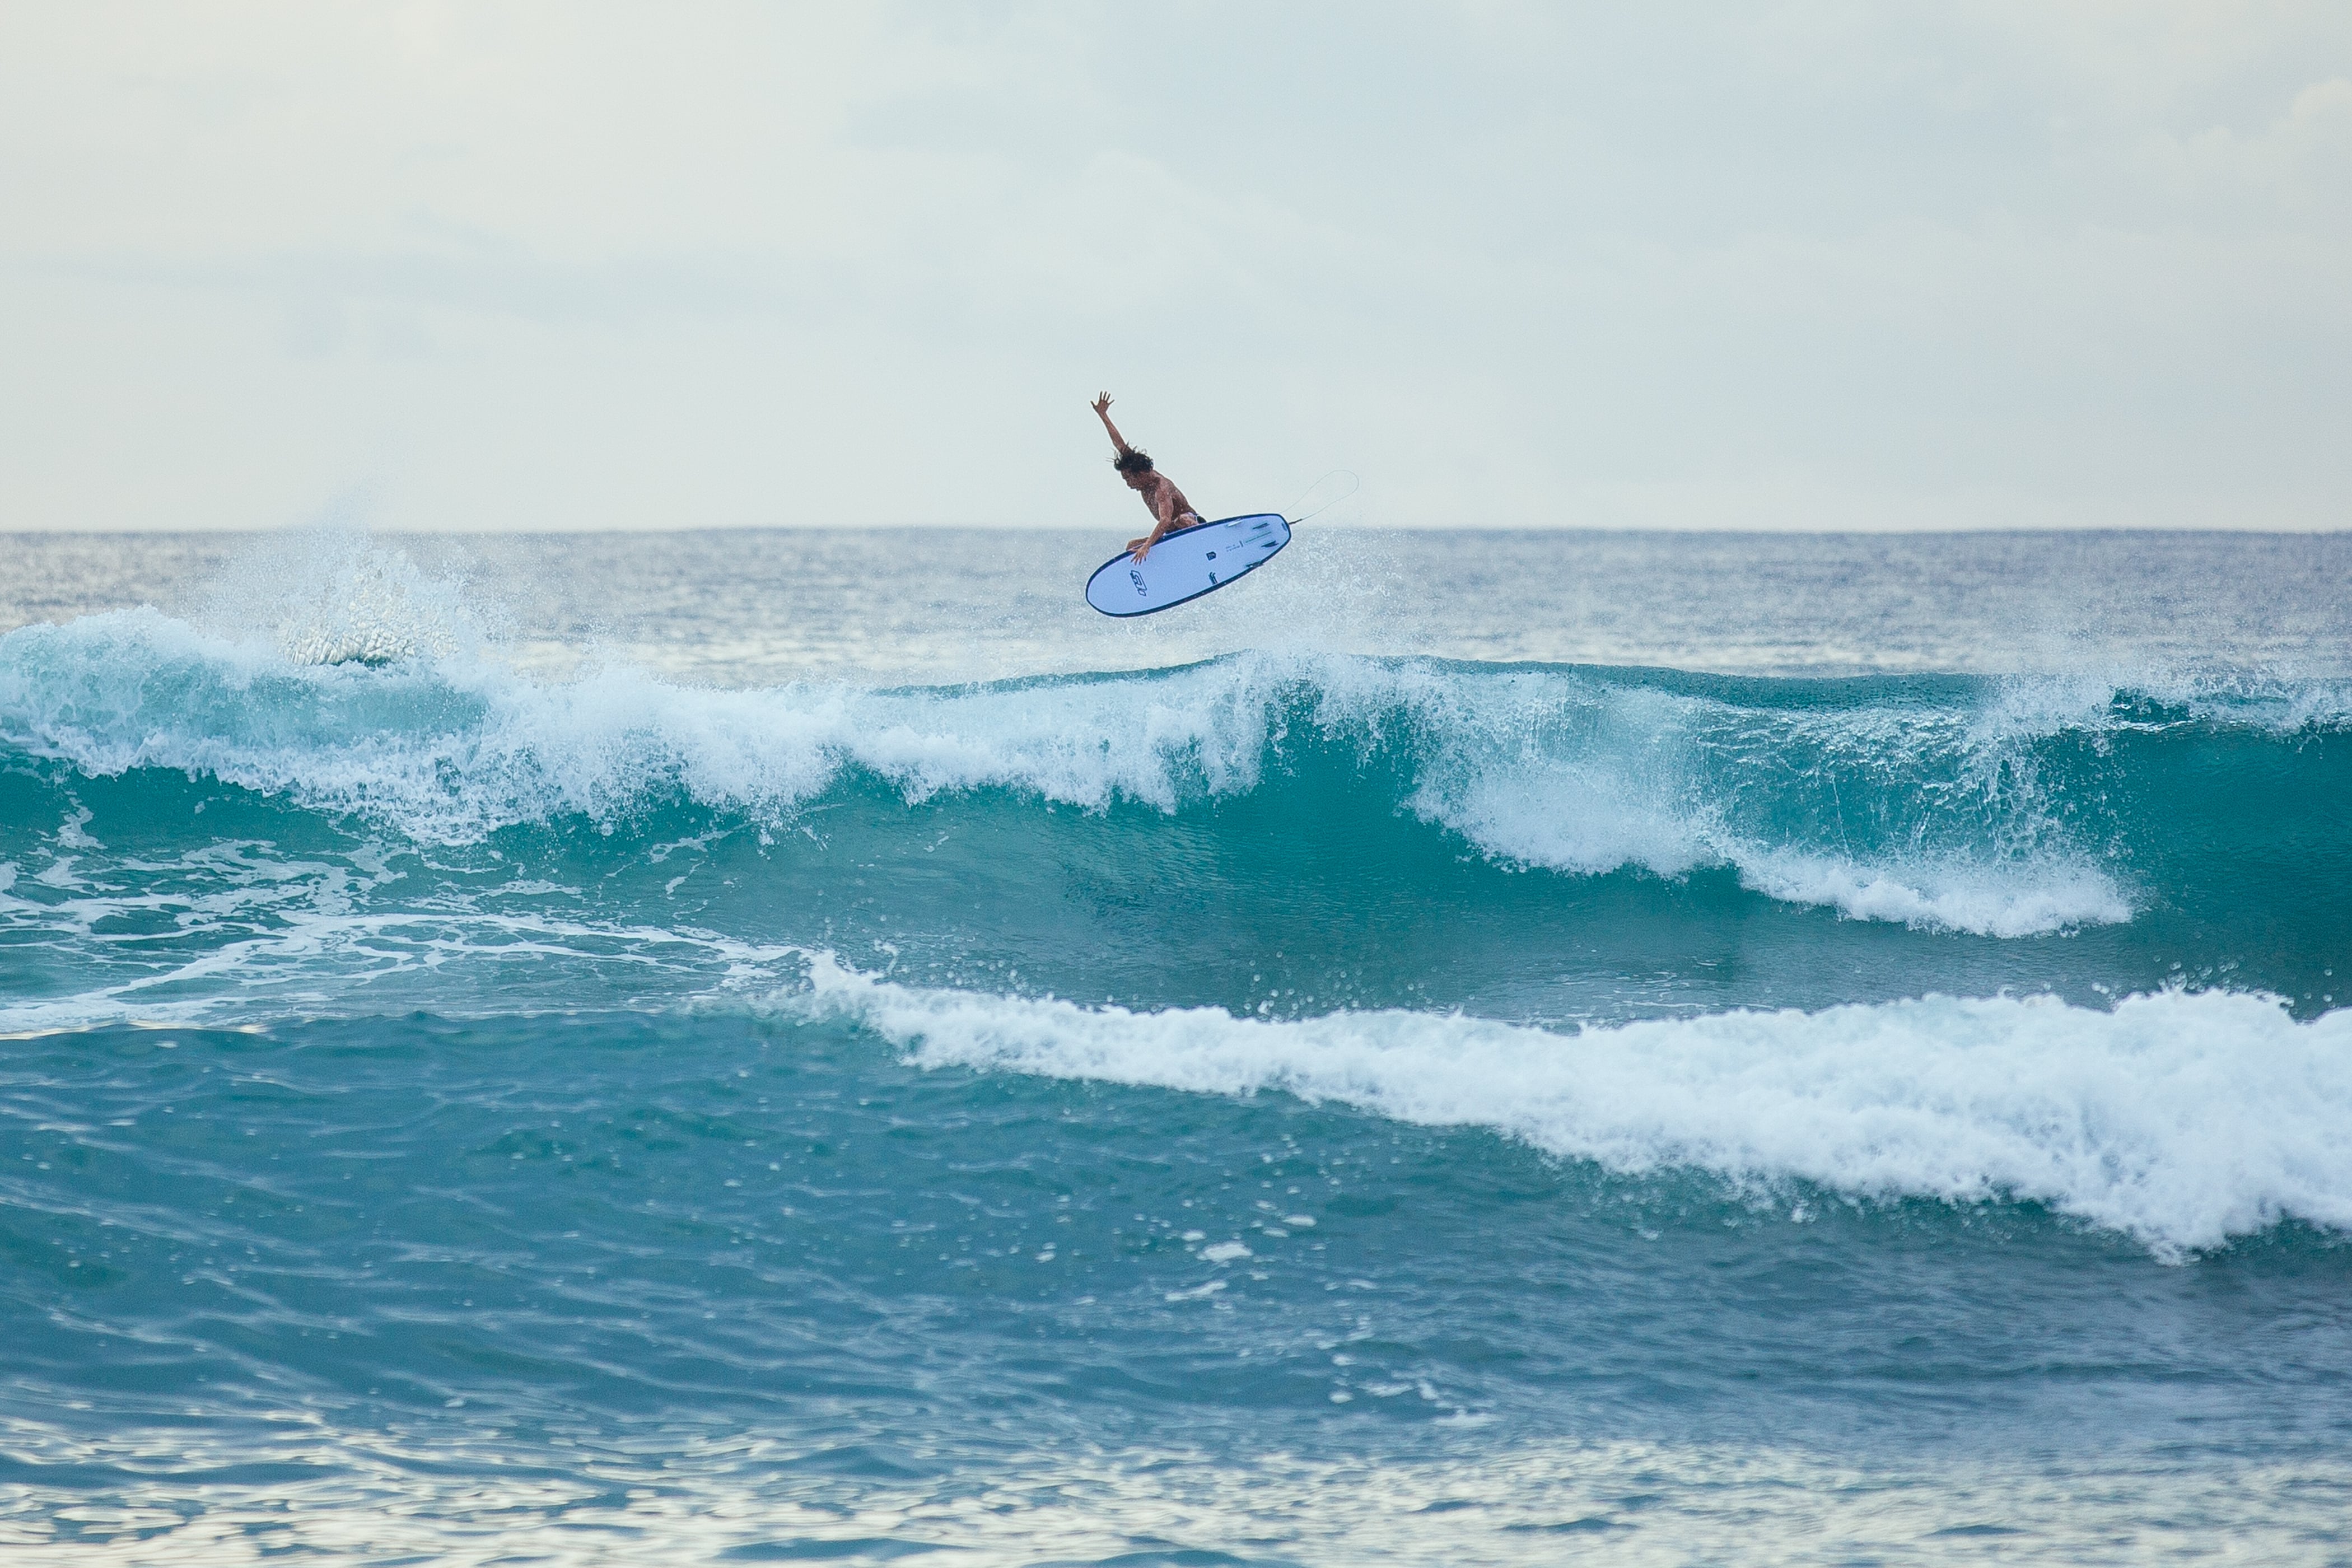 Ein fortgeschrittener Surfer bei einem Aerial Trick